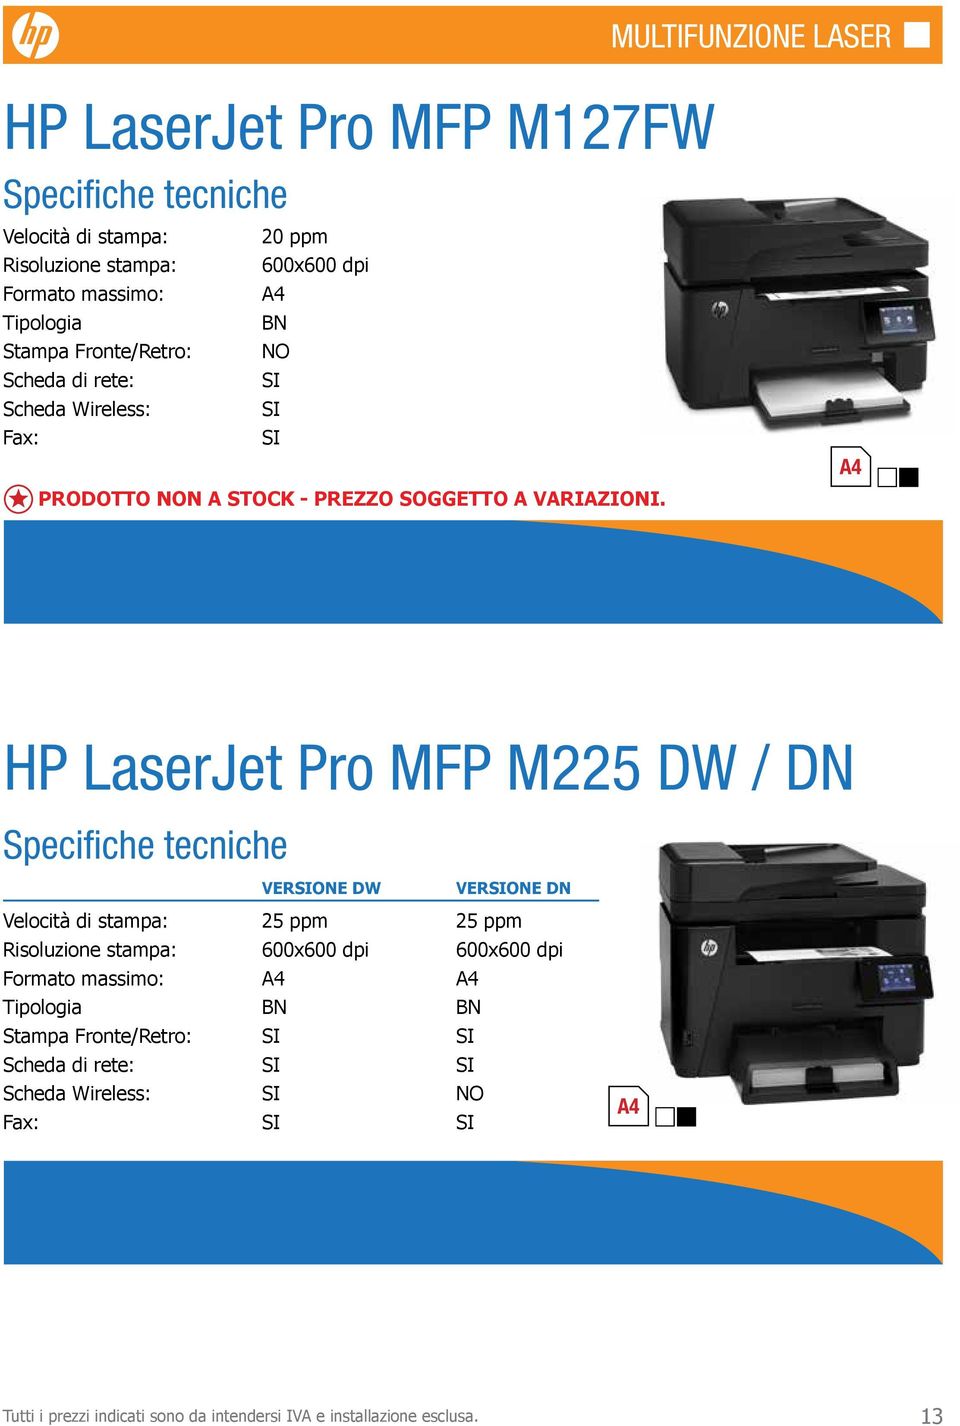 HP LaserJet Pro MFP M225 DW / DN VERONE DW VERONE DN Velocità di stampa: 25 ppm 25 ppm Risoluzione stampa: 600x600 dpi 600x600 dpi